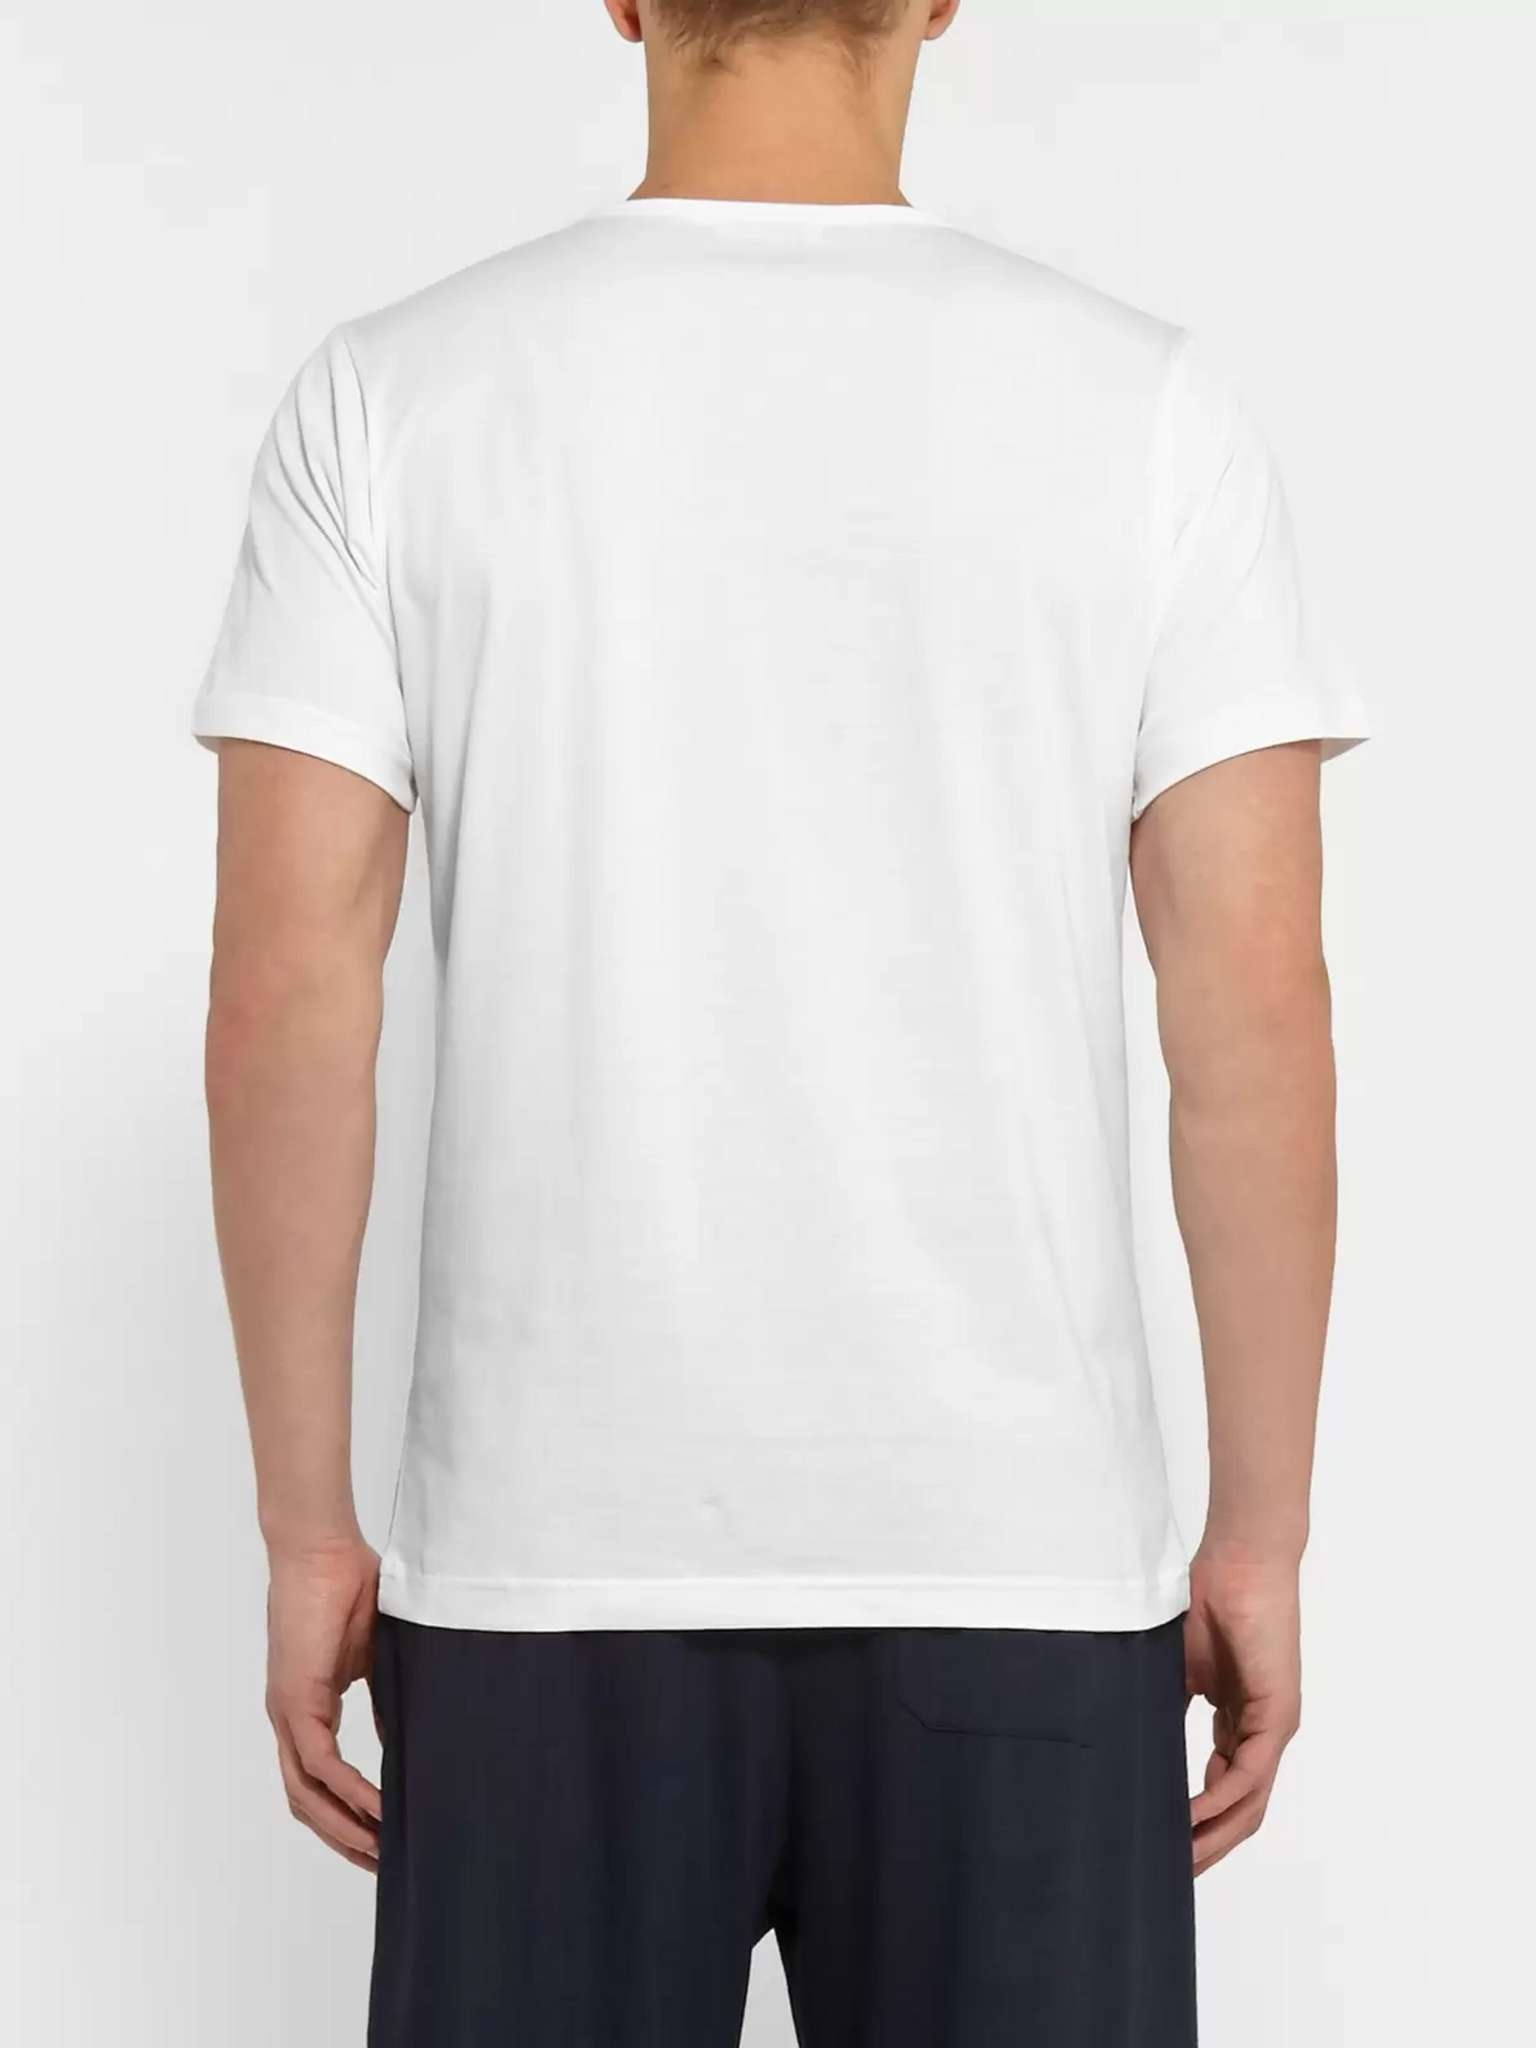 Superfine Cotton Underwear T-Shirt - 4